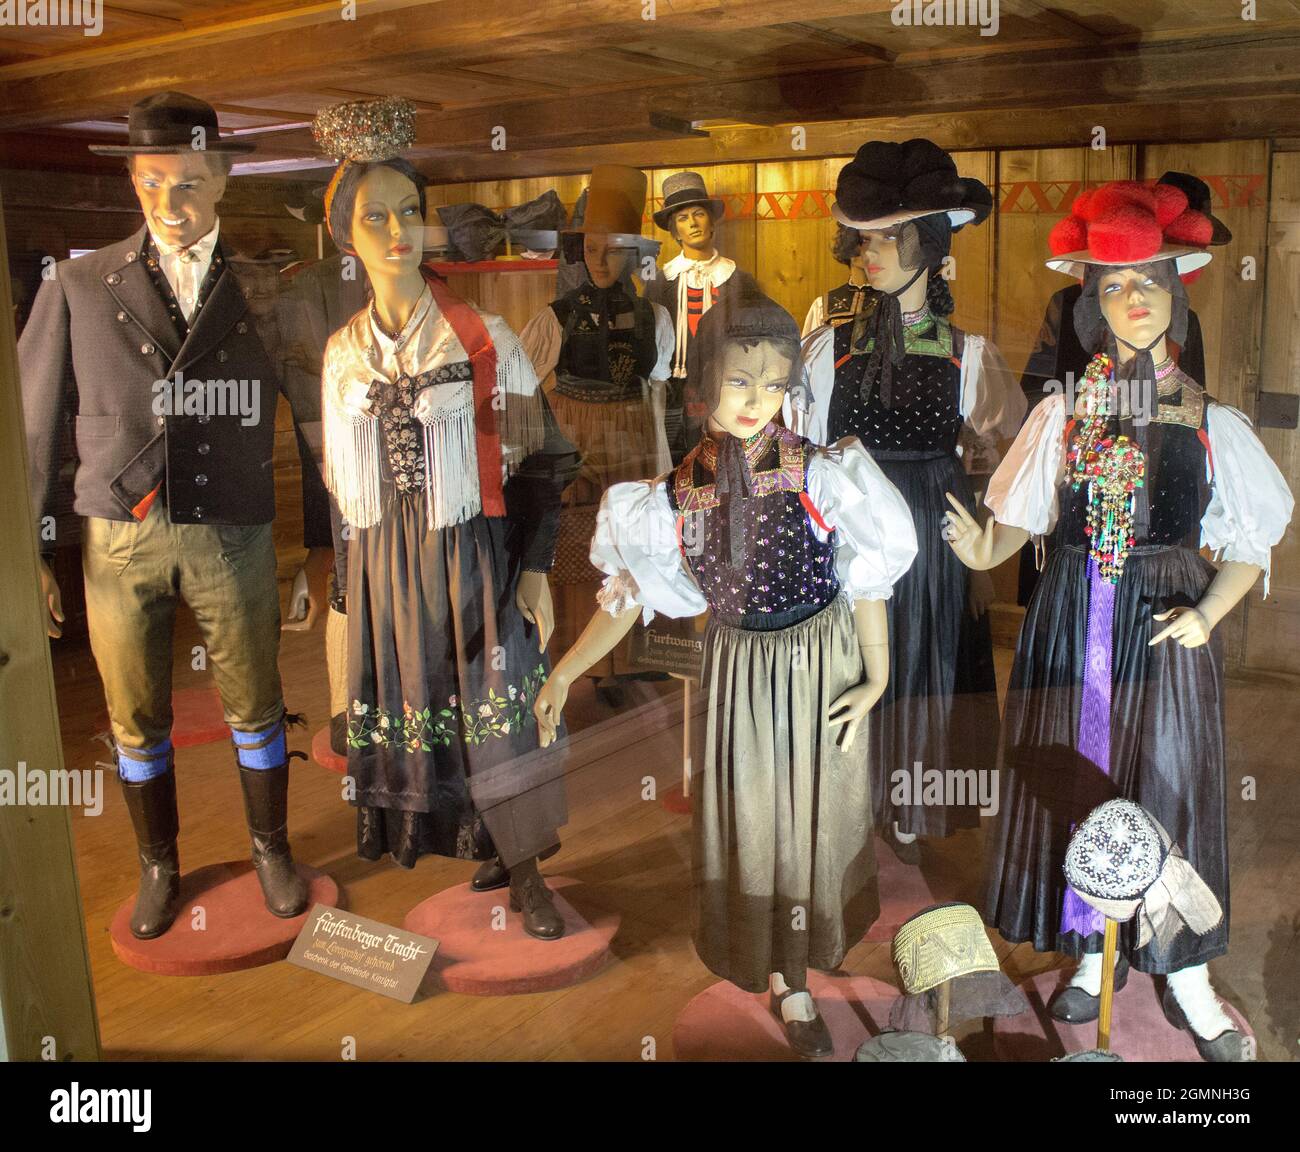 Exposition de mannequins de costumes régionaux traditionnels au Musée en plein air de la Forêt-Noire, Gutach, Bade-Wurtemberg, Allemagne Banque D'Images